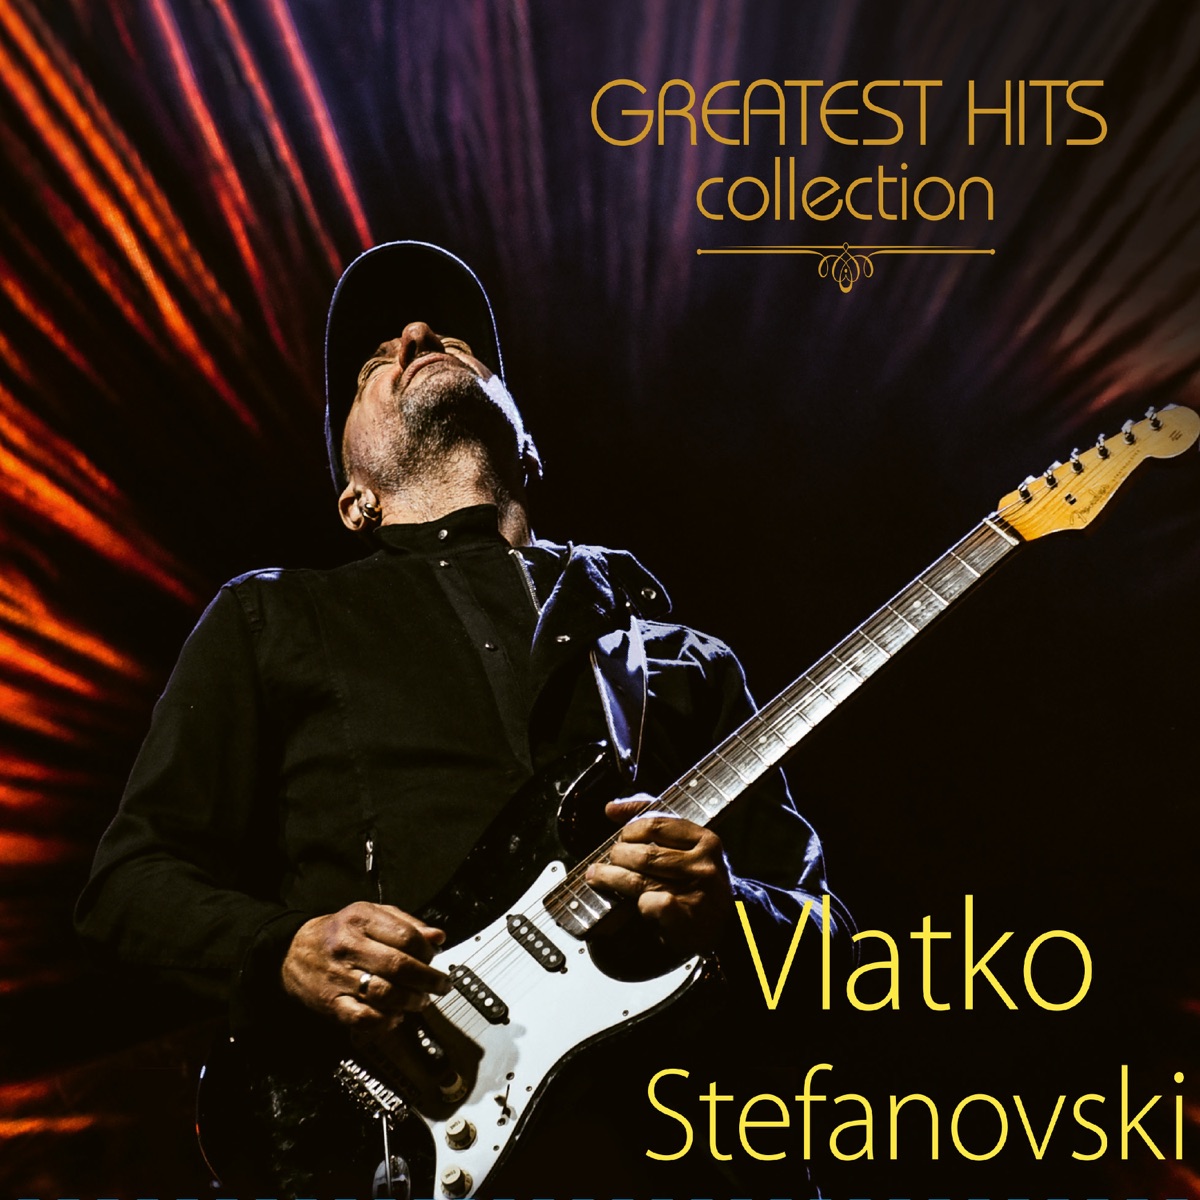 Gipsy Magic - Album by Vlatko Stefanovski - Apple Music